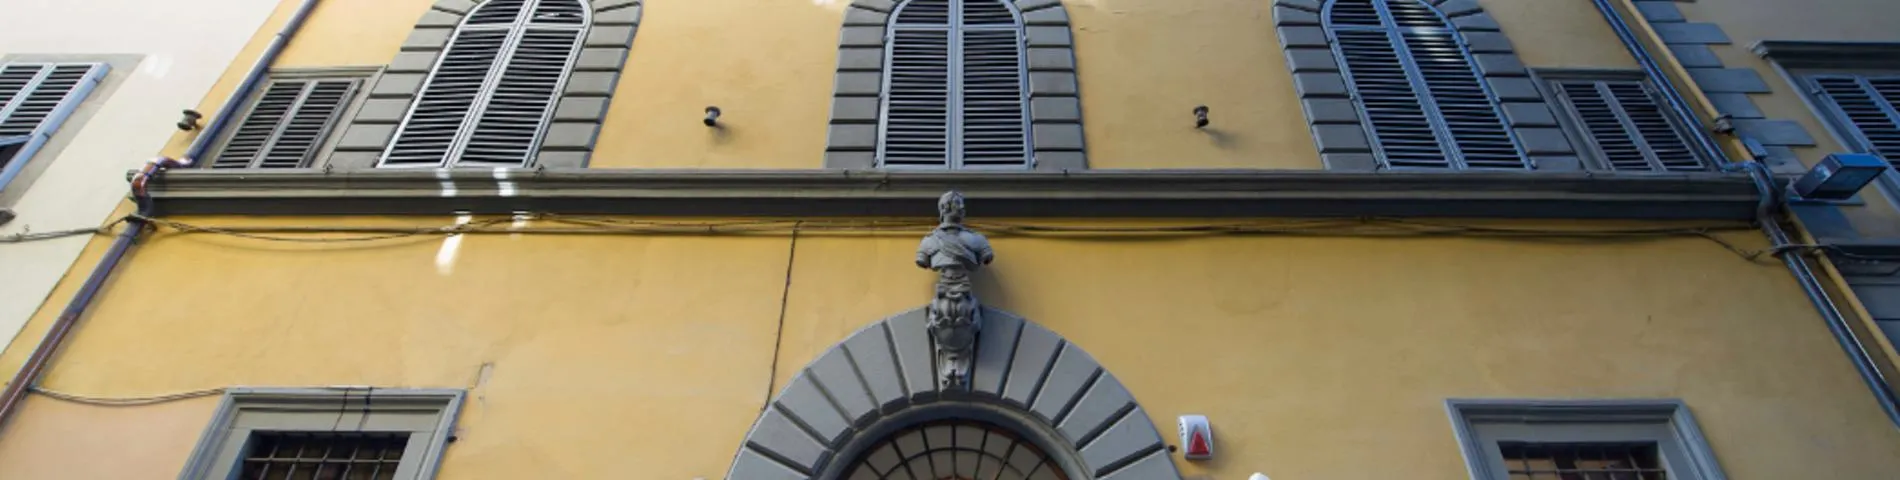 Scuola Lorenzo de Medici immagine 1